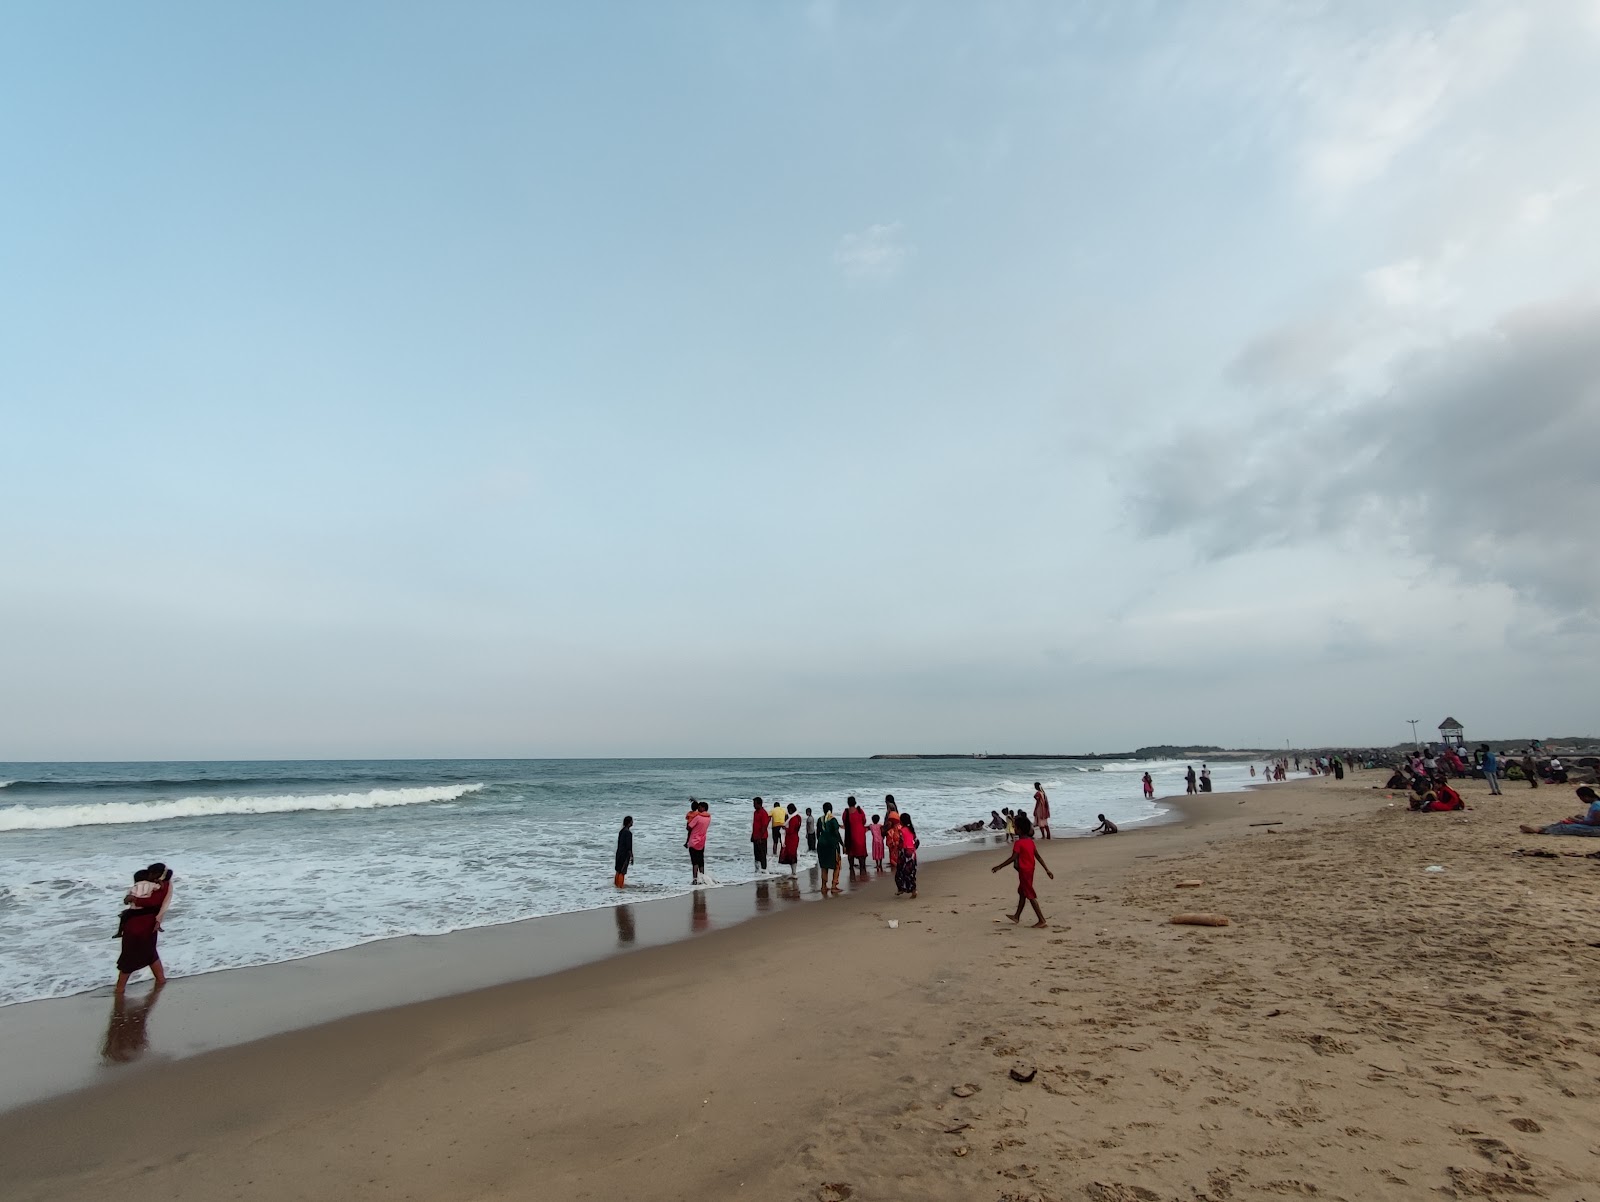 Pondy Marinaa'in fotoğrafı parlak kum yüzey ile